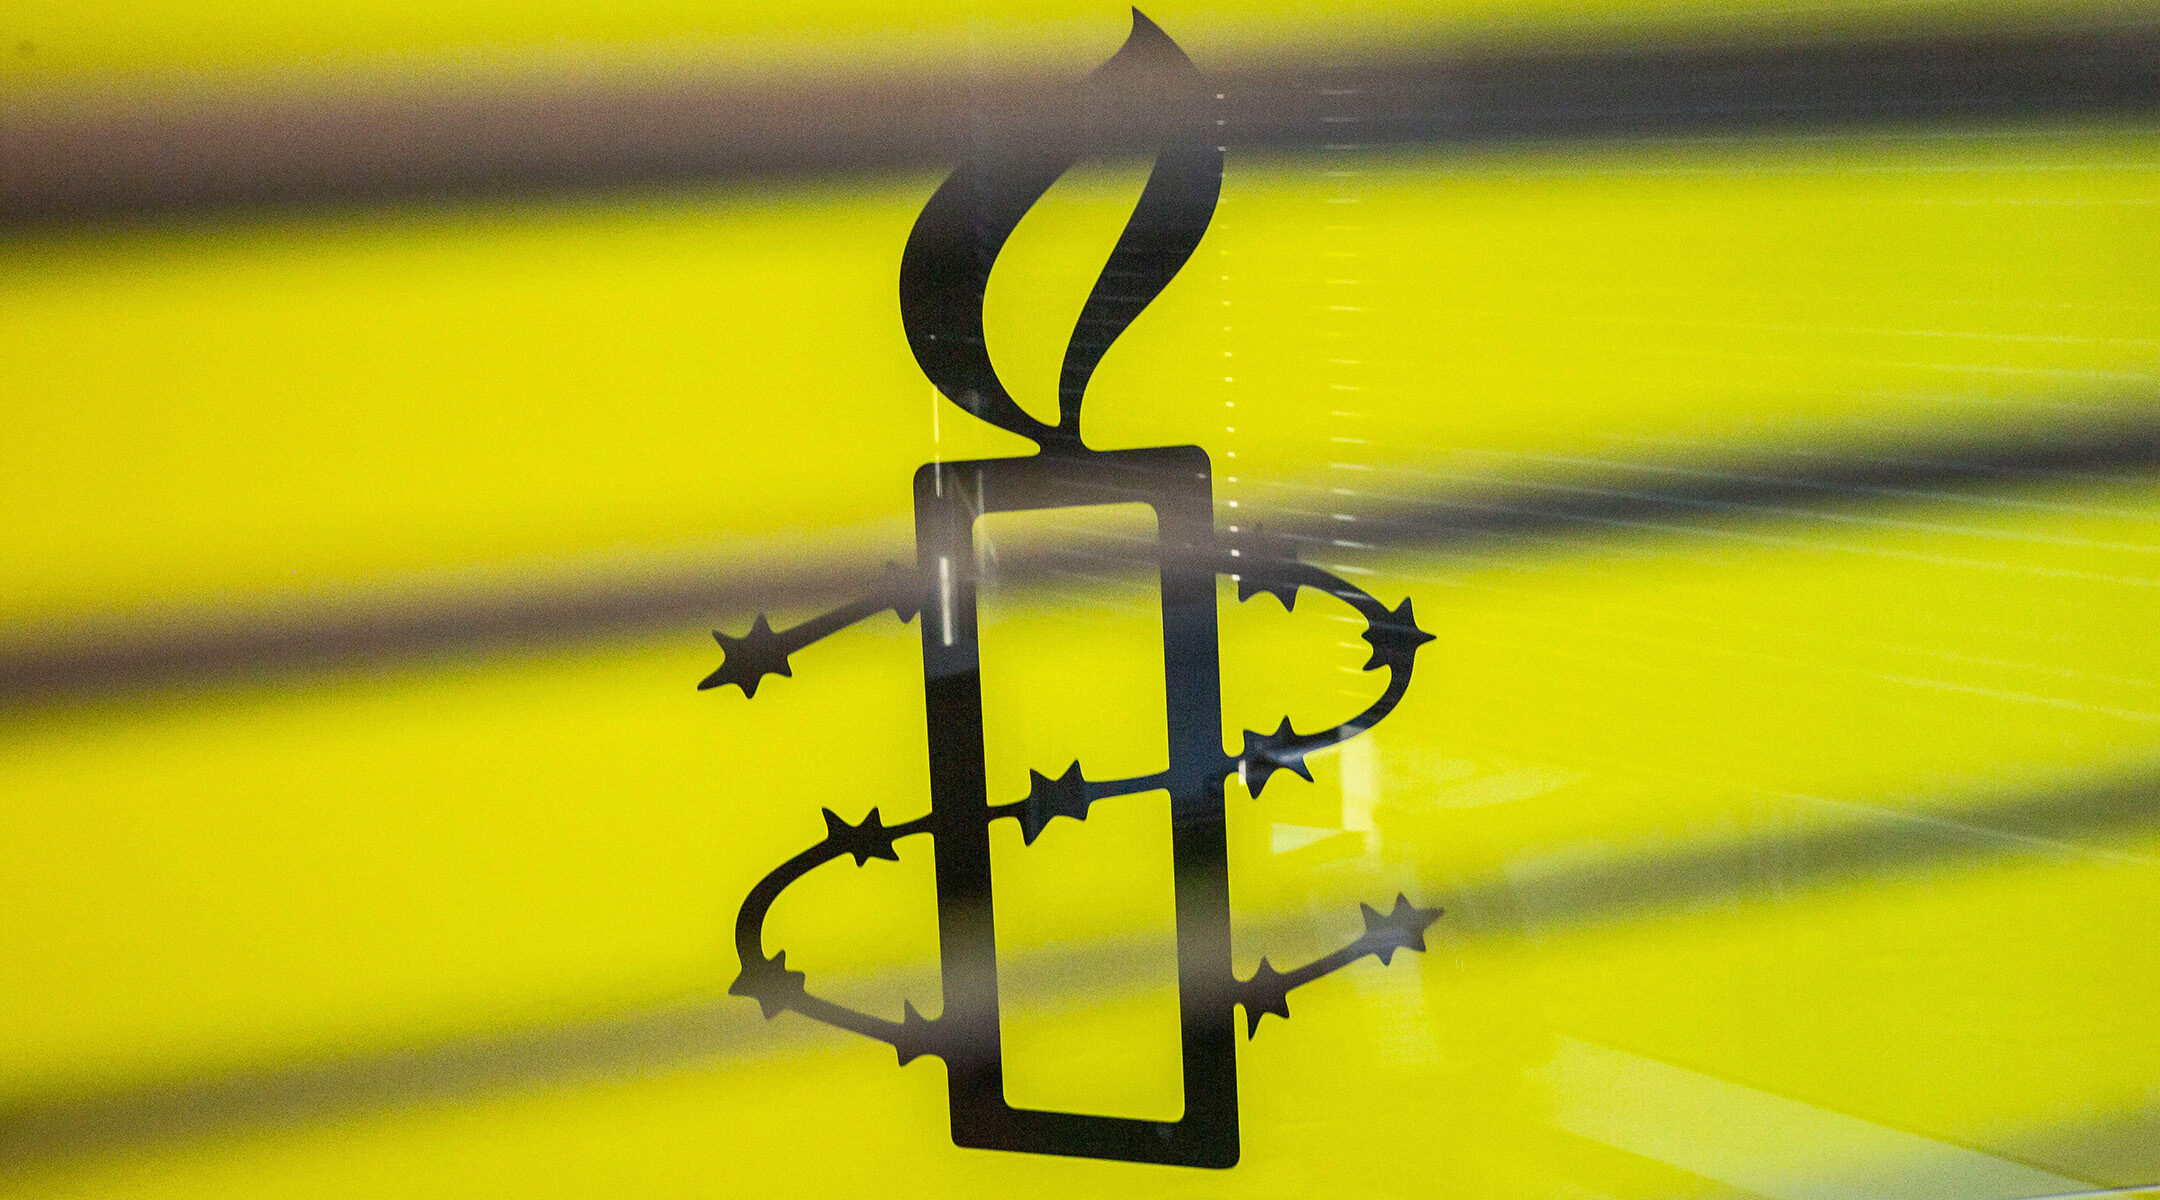 The Amnesty International logo